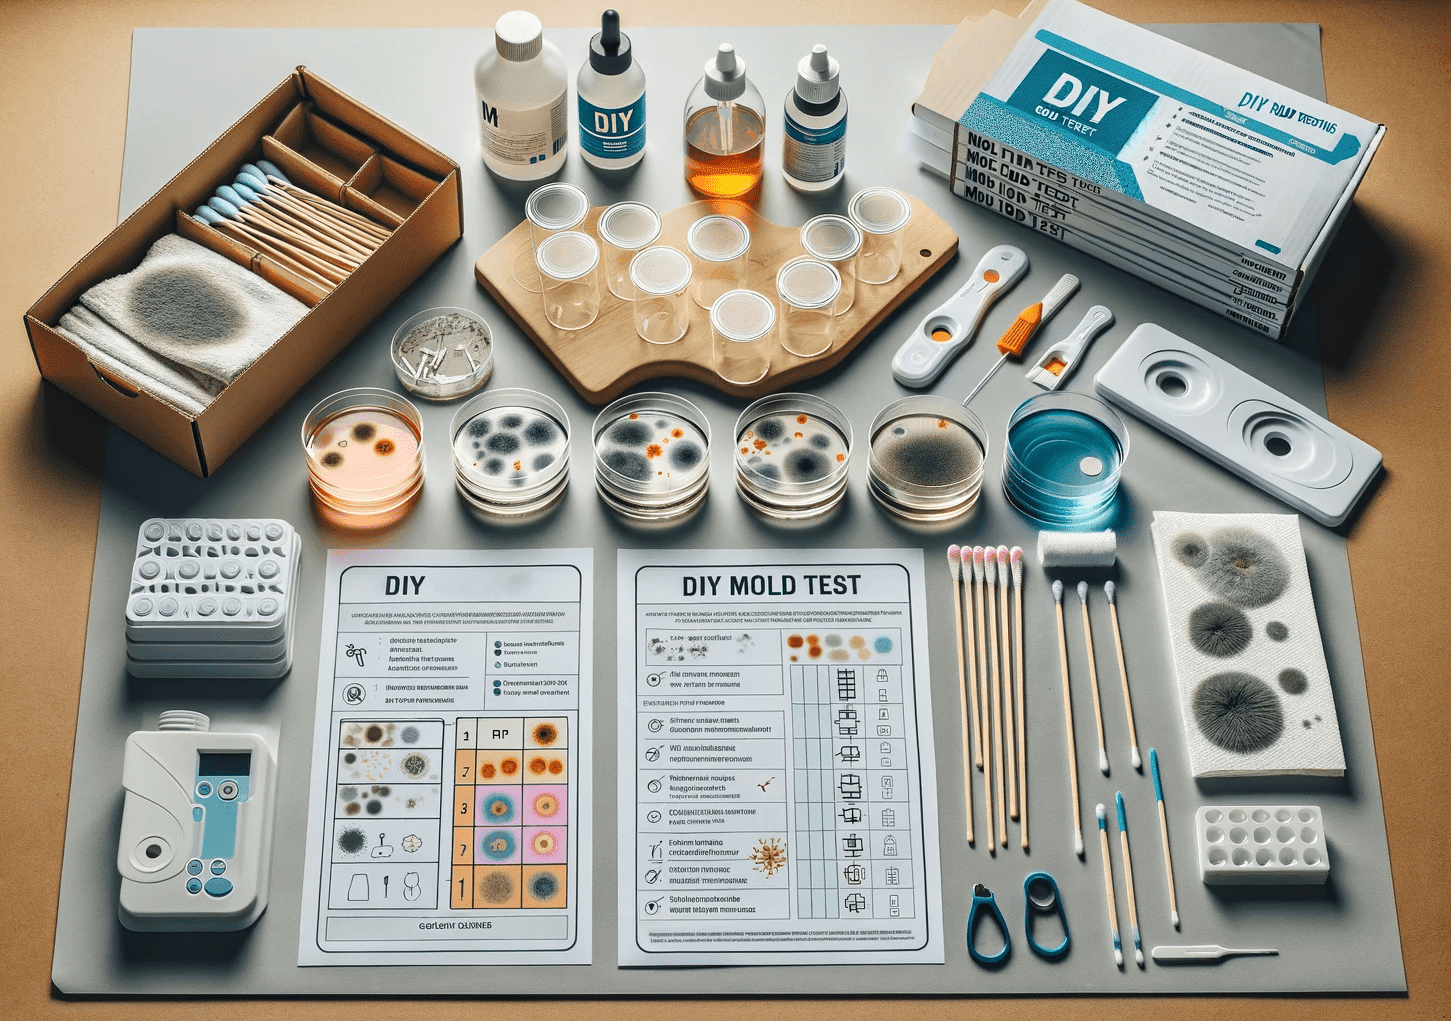 Sets of DIY mold testing kits